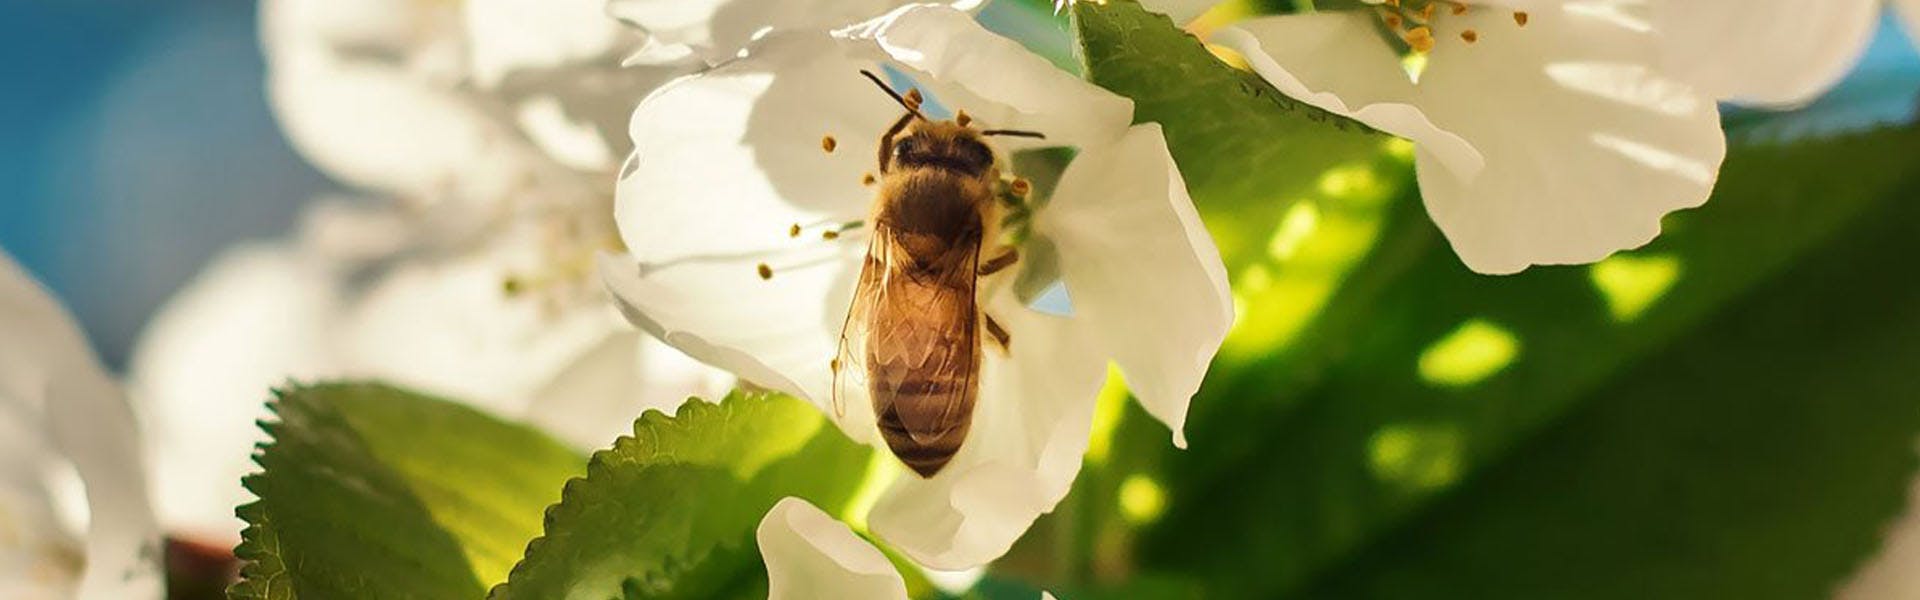 Kümmerst du dich um Bienen? Können Landwirte etwas tun, um sie zu retten?